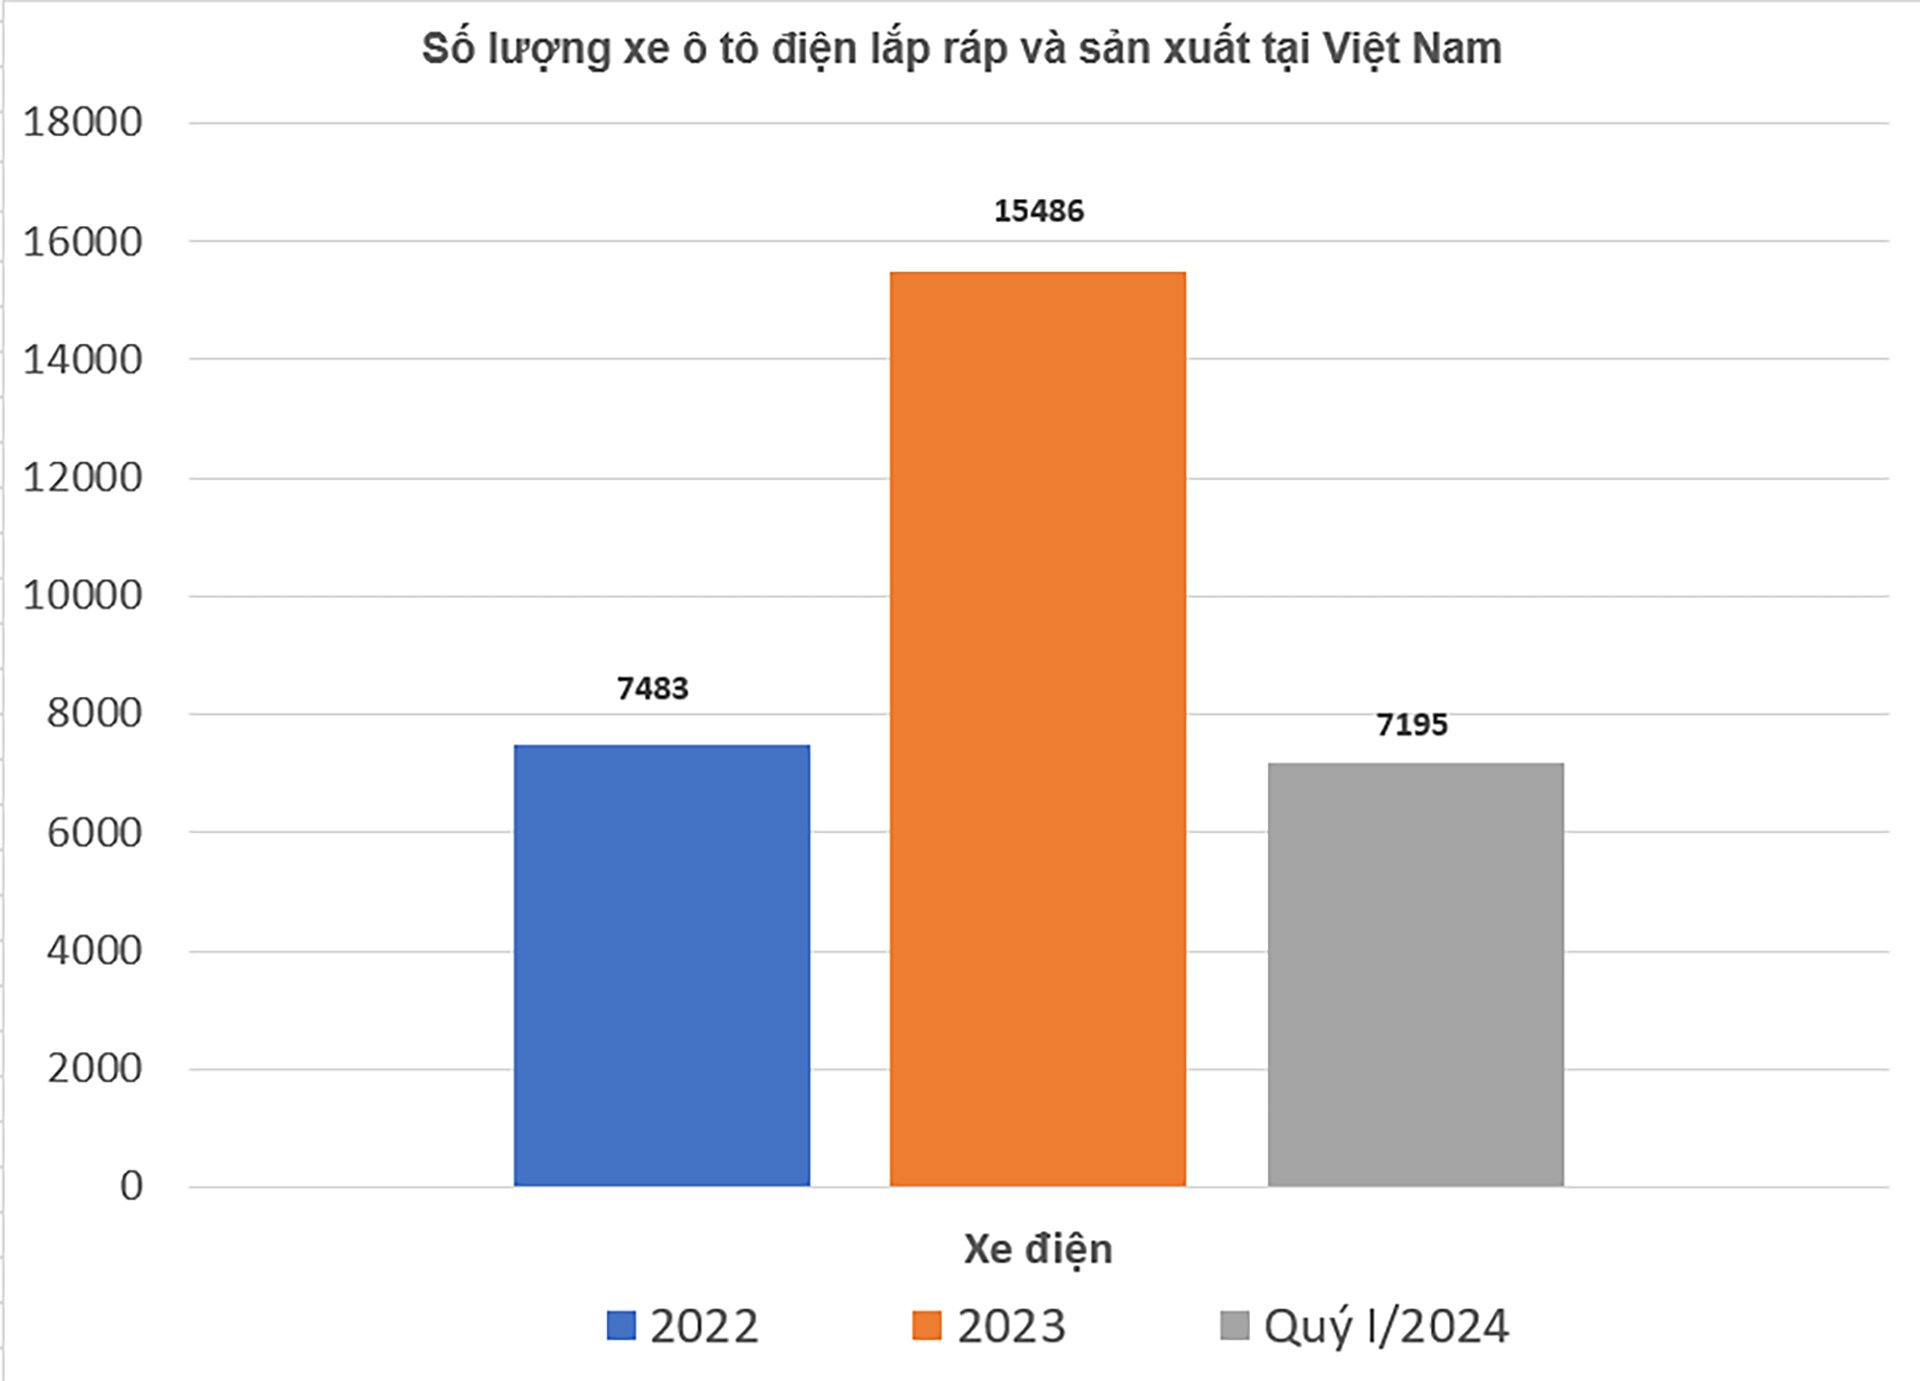 Lượng xe điện tăng nhanh trong 3 năm, Việt Nam giải bài toán trạm sạc thế nào?